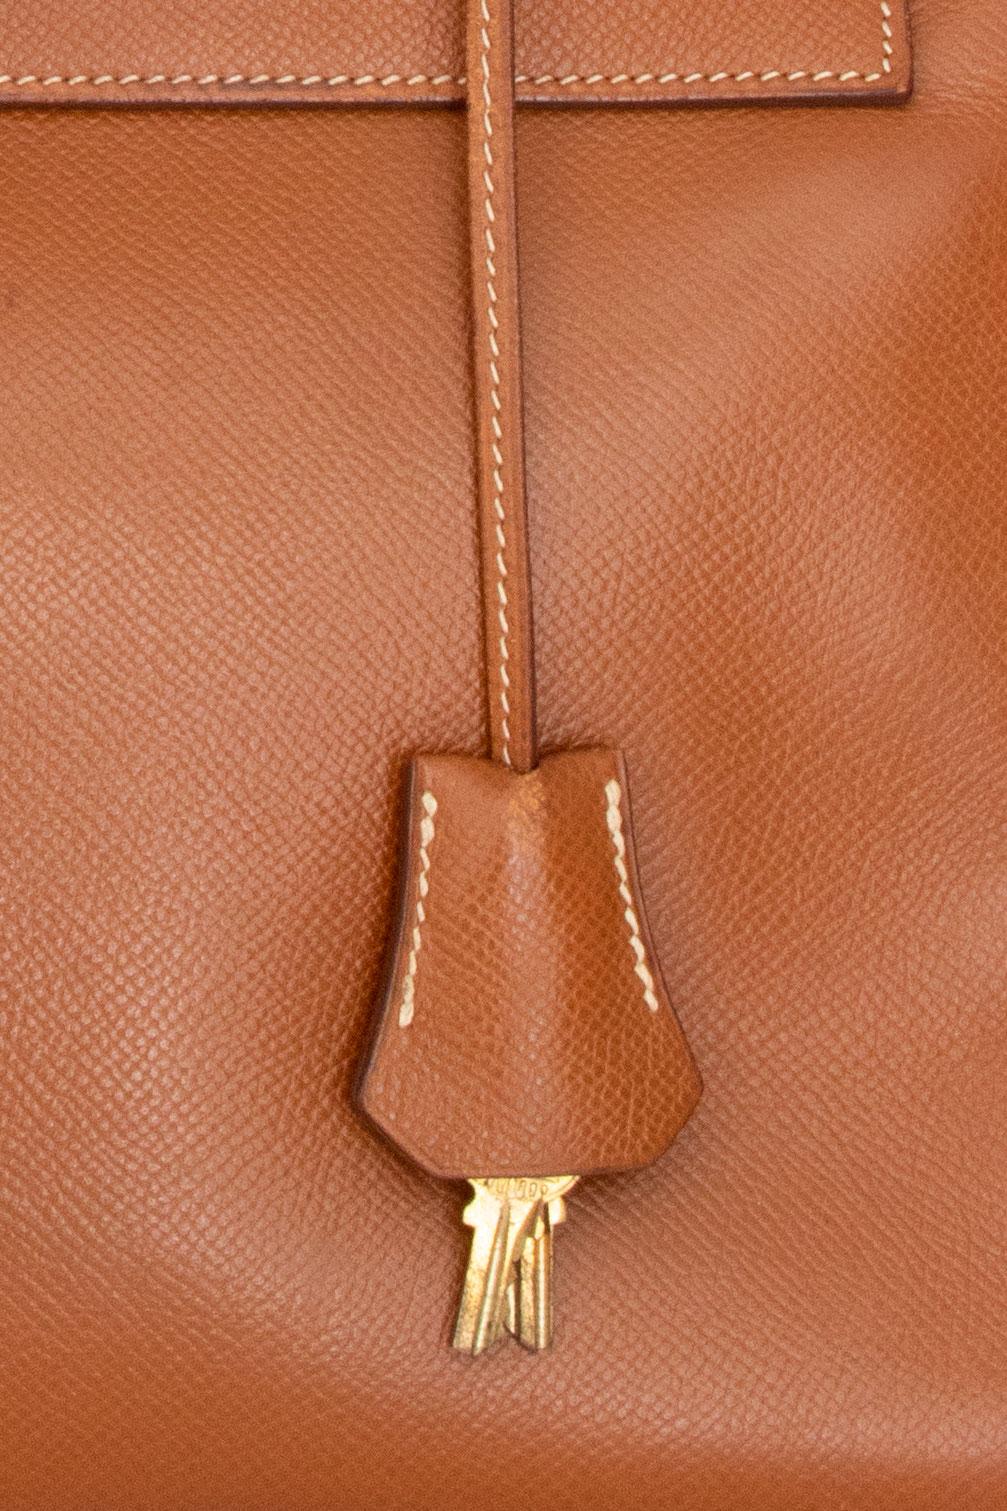 A 1990s Vintage Hermès Kelly 32 Epsom Handbag with Gold Hardware  For Sale 1